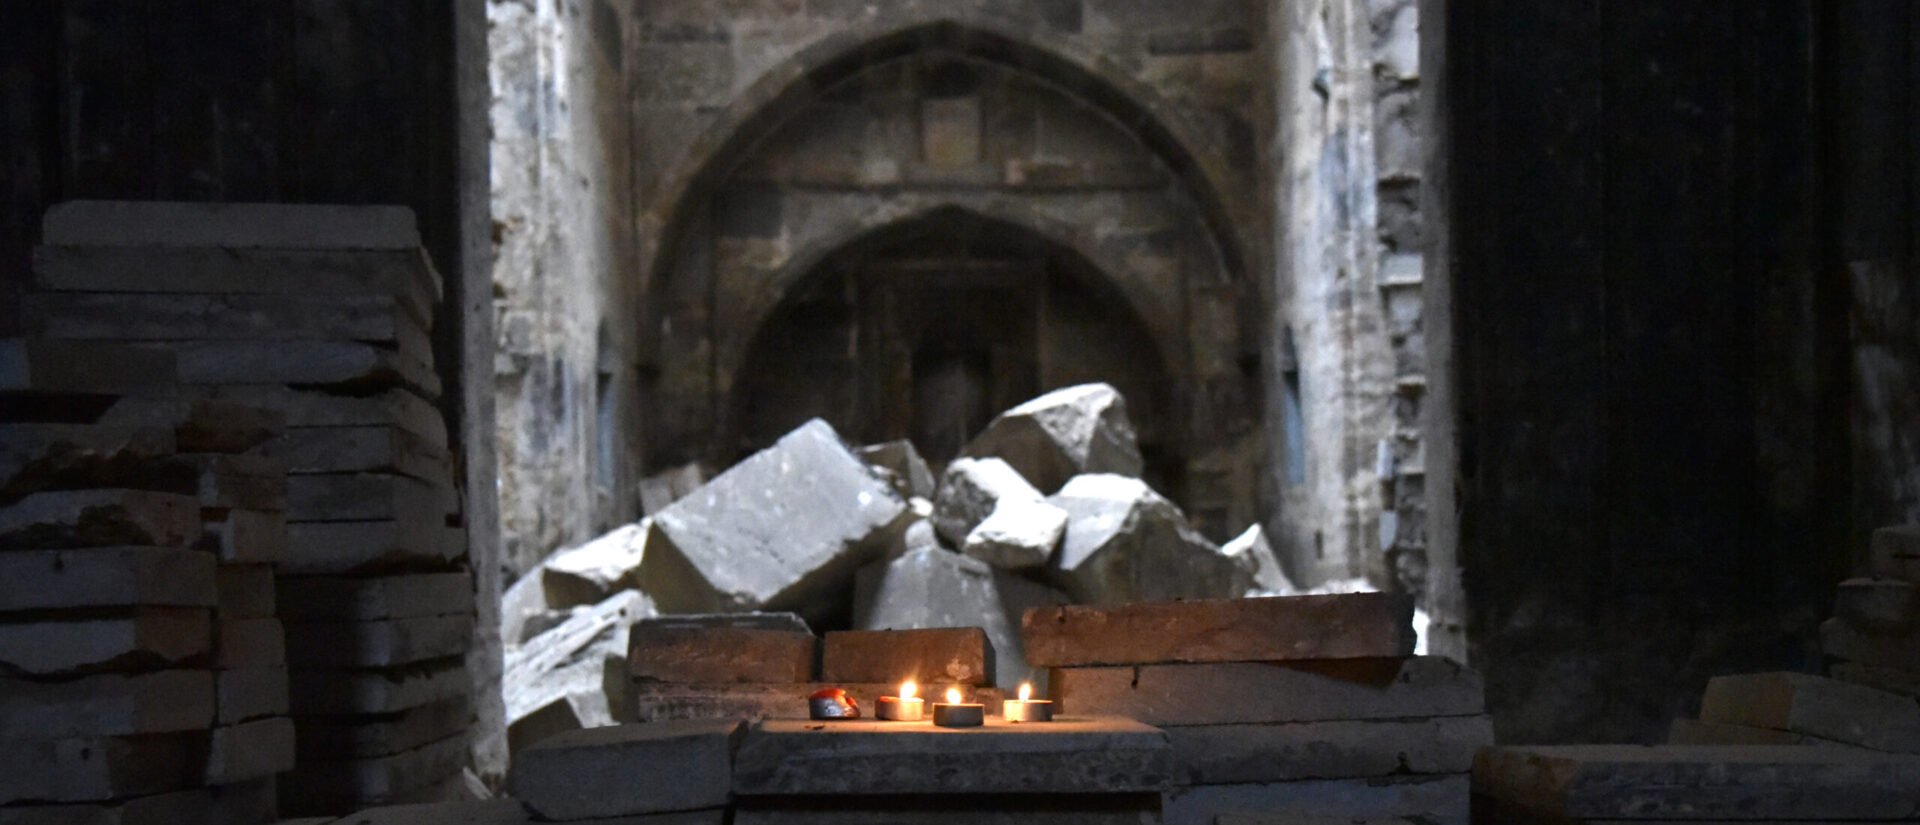 Des bougies allumées dans la cathédrale chaldéenne de Mossoul (Irak), détruite pendant la guerre | © Raphaël Zbinden